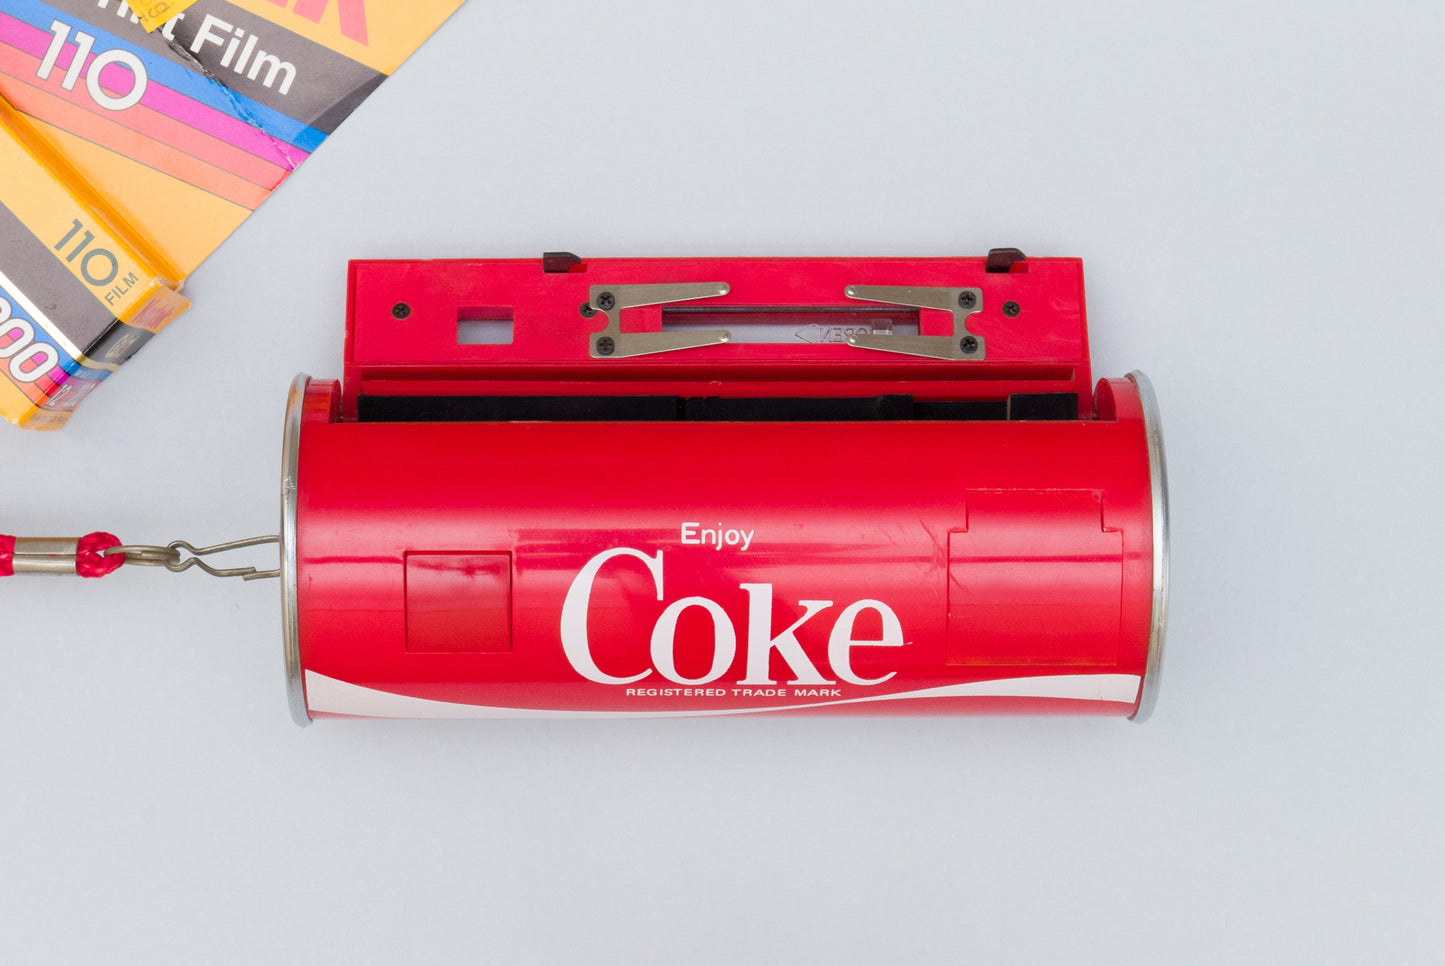 Coca-Cola Coke Can Promo 110 Film Camera